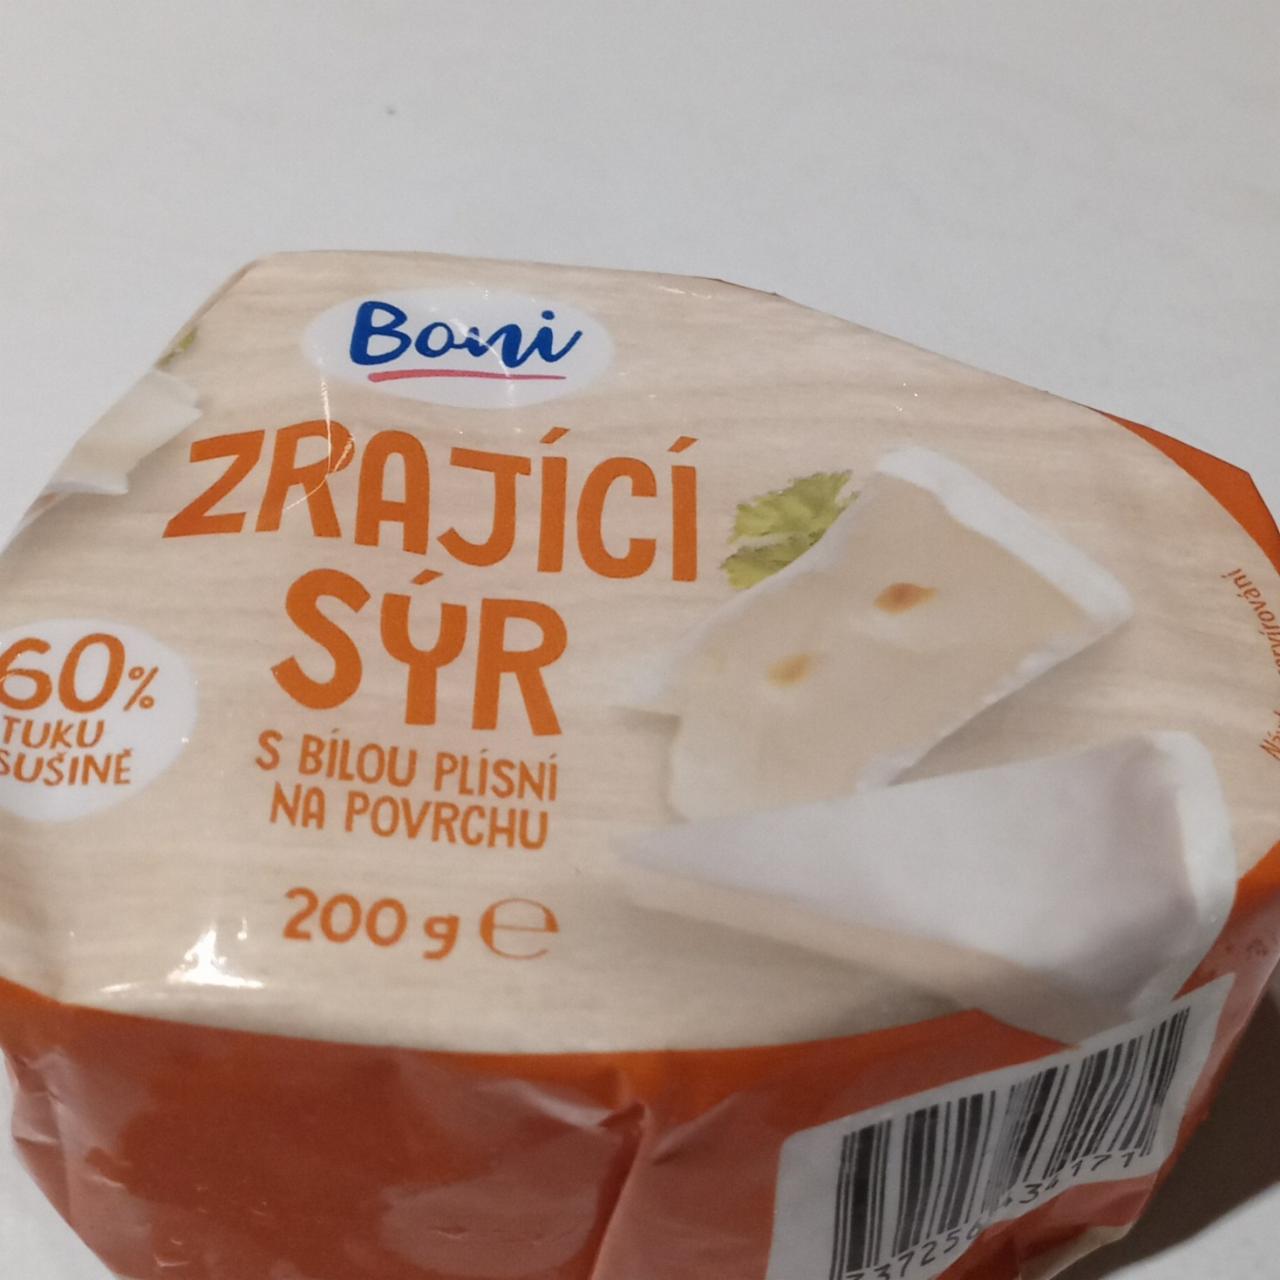 Fotografie - Zrající sýr s bílou plísní Boni